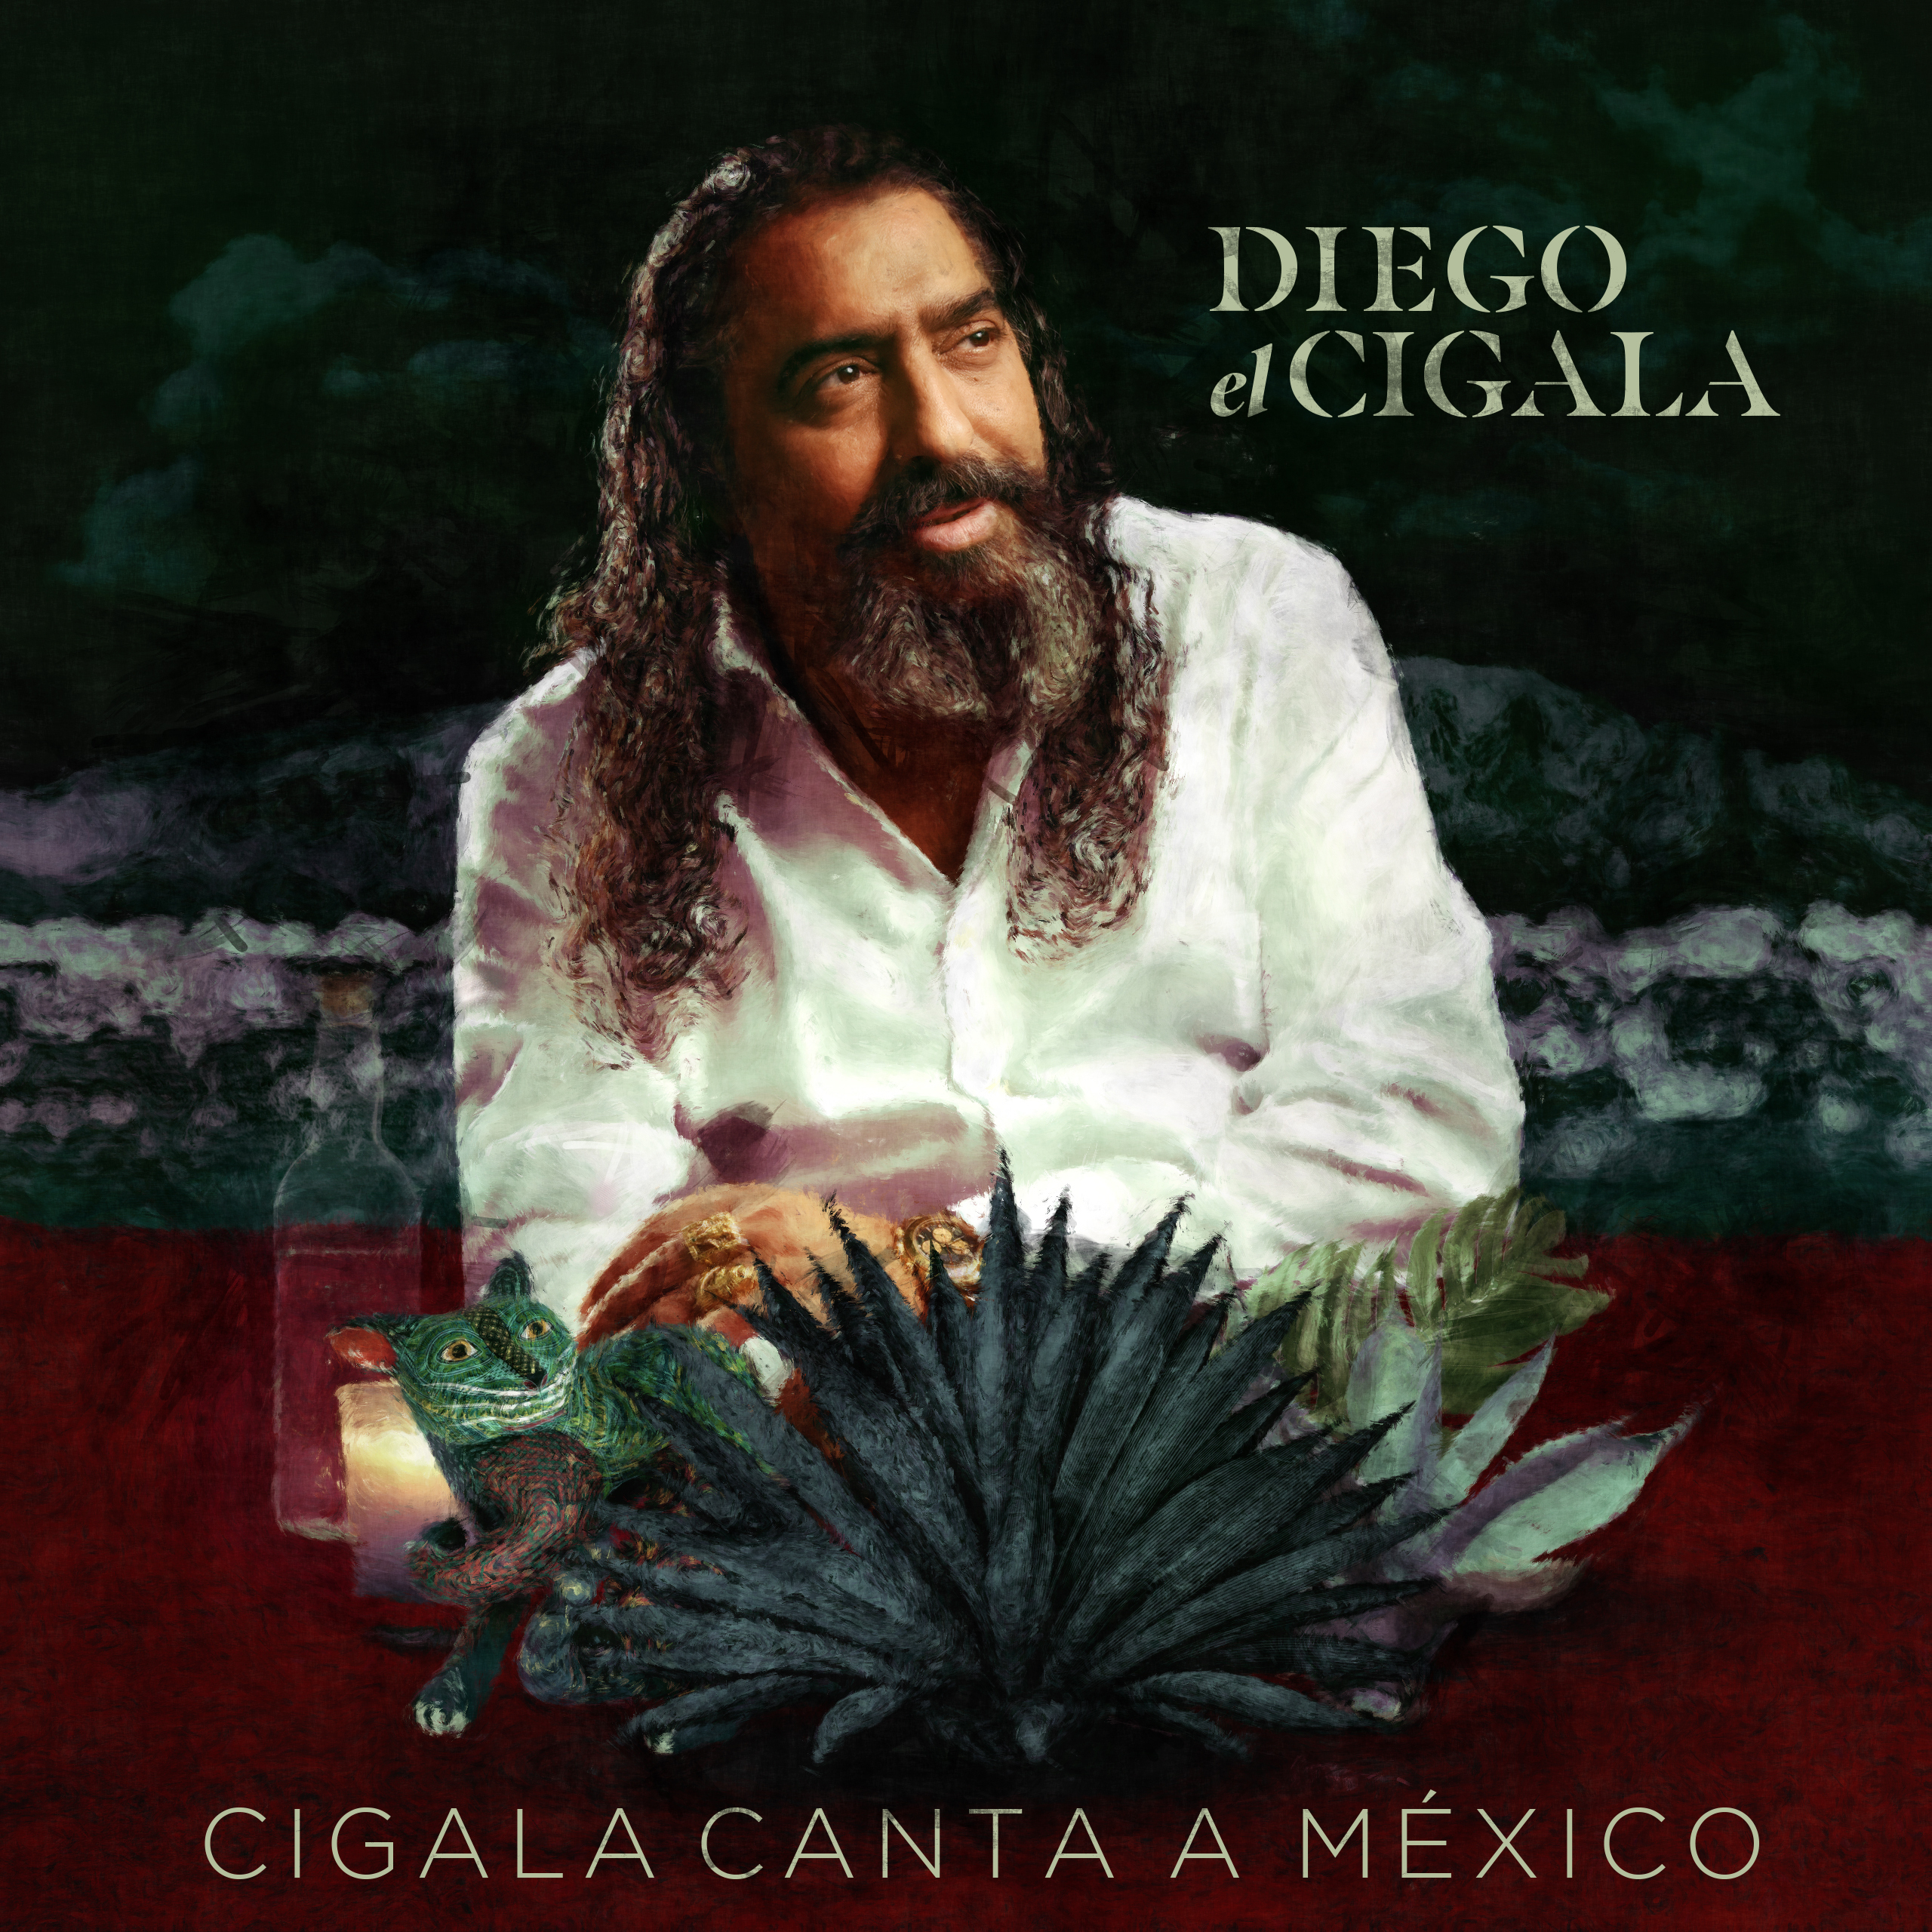 Diego “El Cigala” continúa con su “Homenaje a México” recorriendo la república